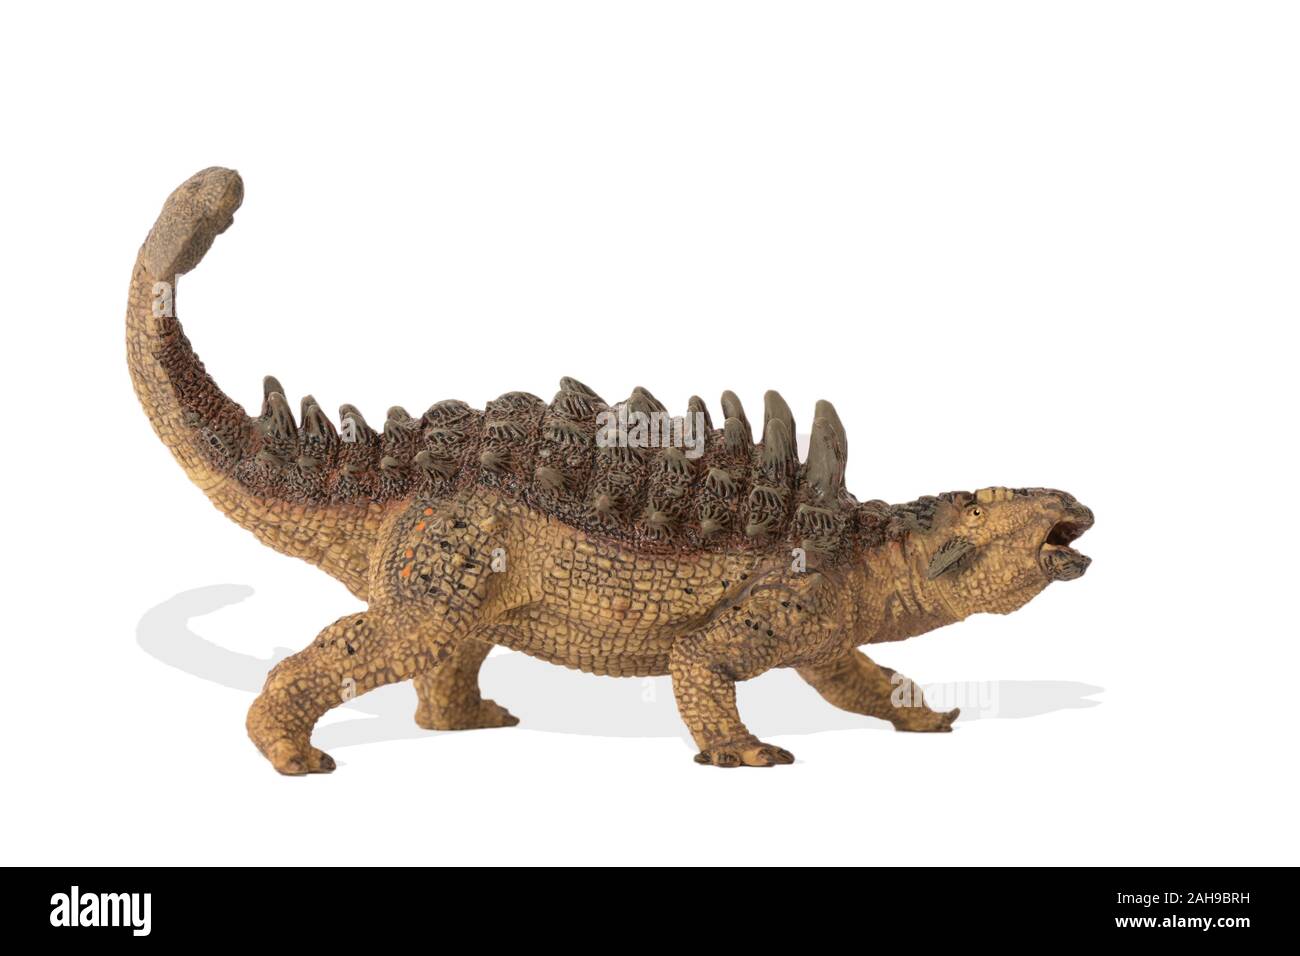 L'Ankylosaurus isolé sur fond blanc. Vue latérale.Ankylosaurus est un dinosaure herbivore vivait dans l'ère du crétacé. Idéal pour de l'image livre scientifique Banque D'Images